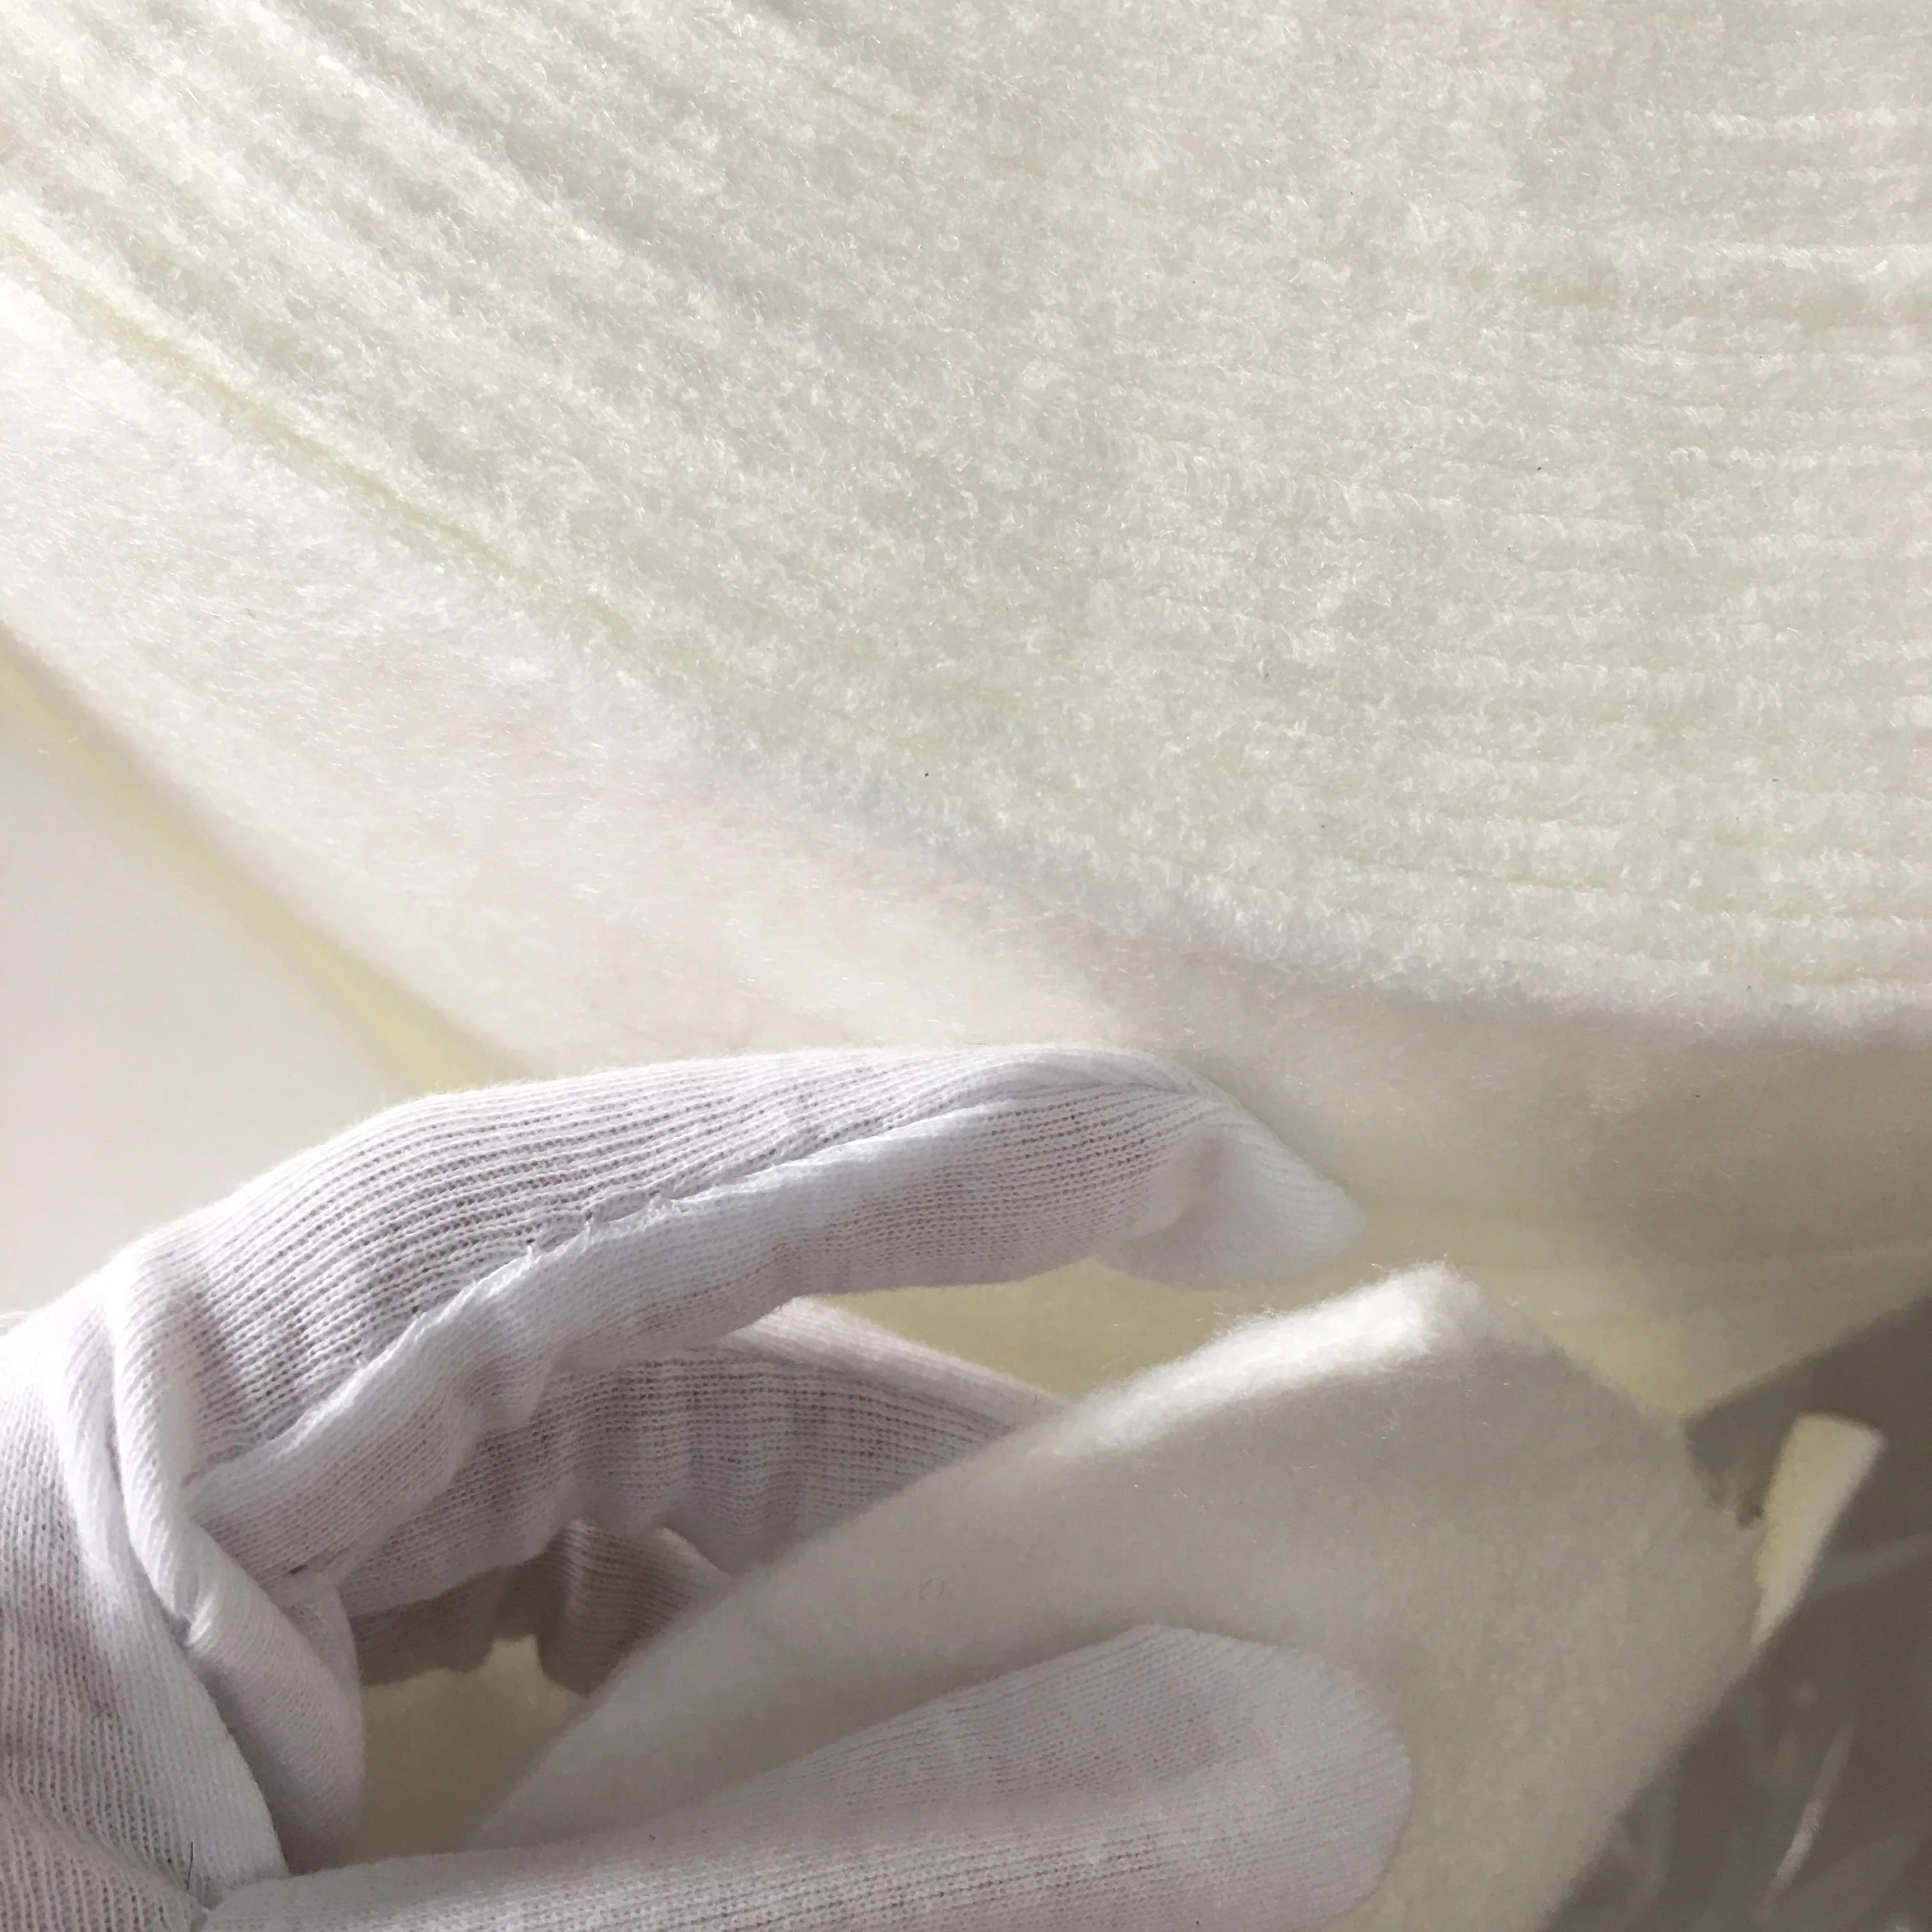 
Cold water soluble PVA nonwoven fabric 